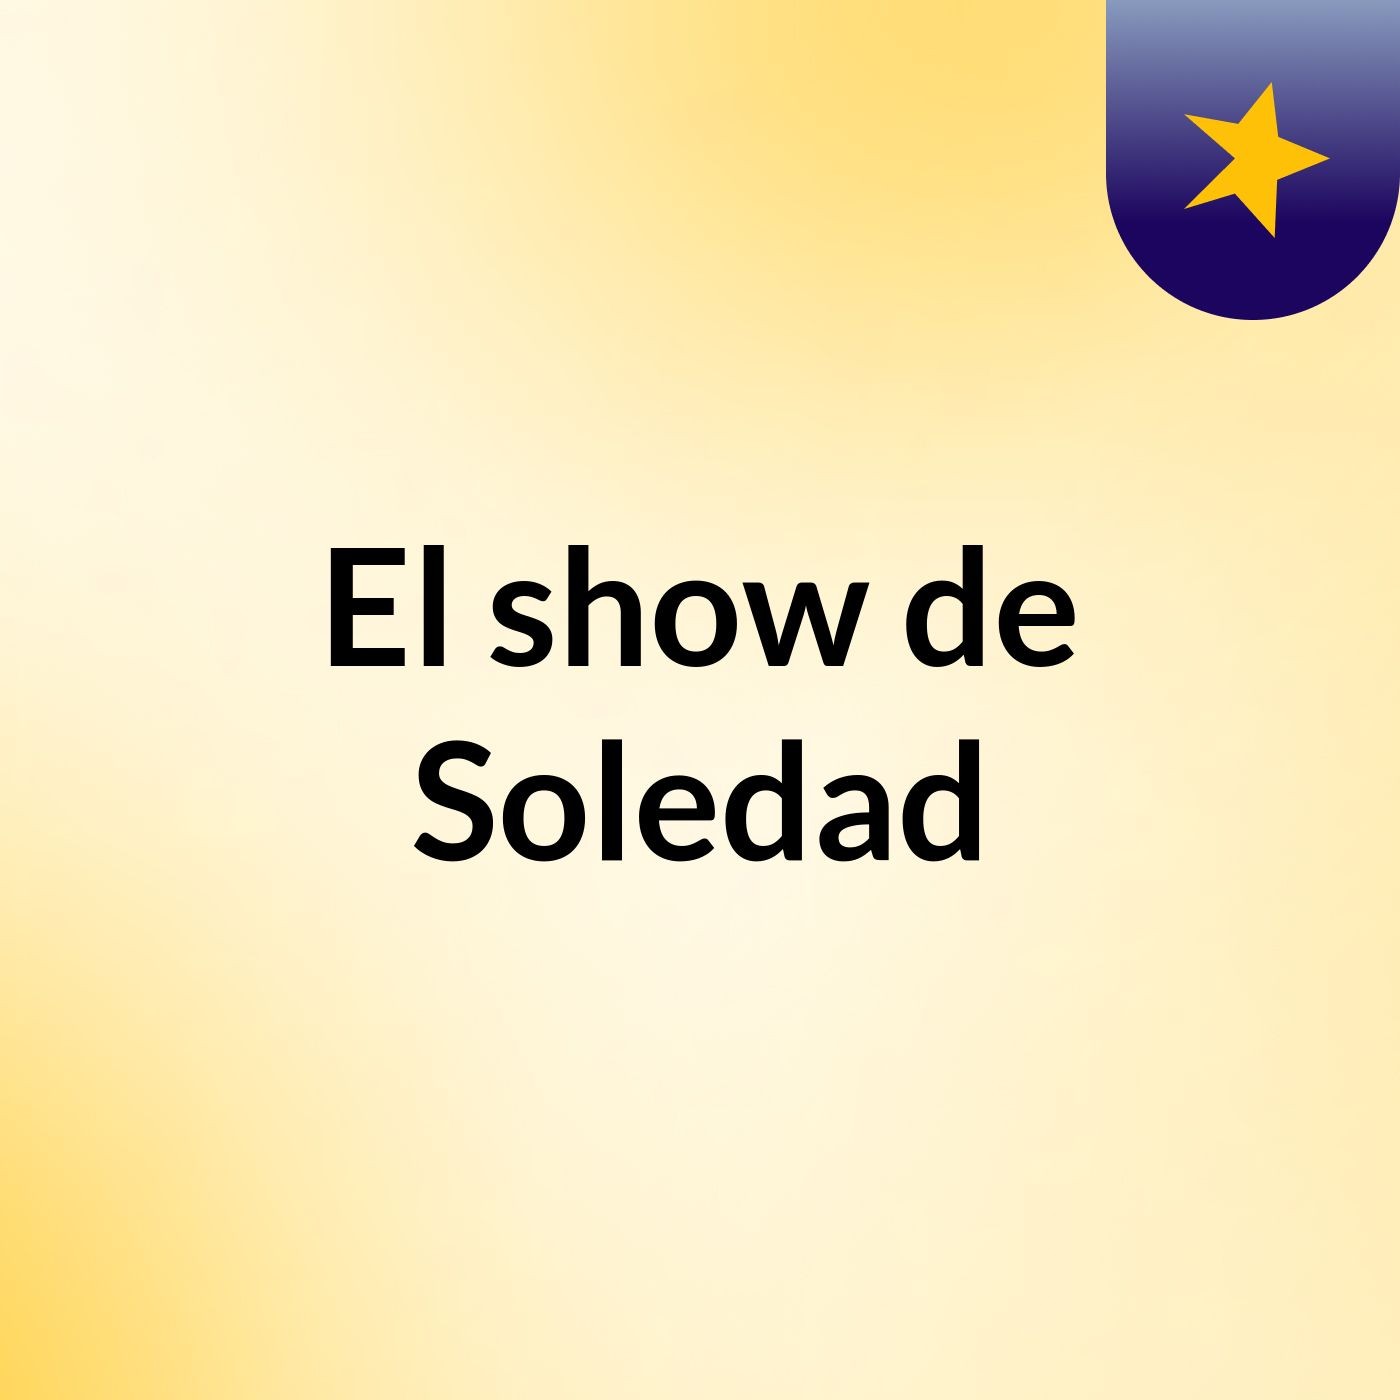 El show de Soledad